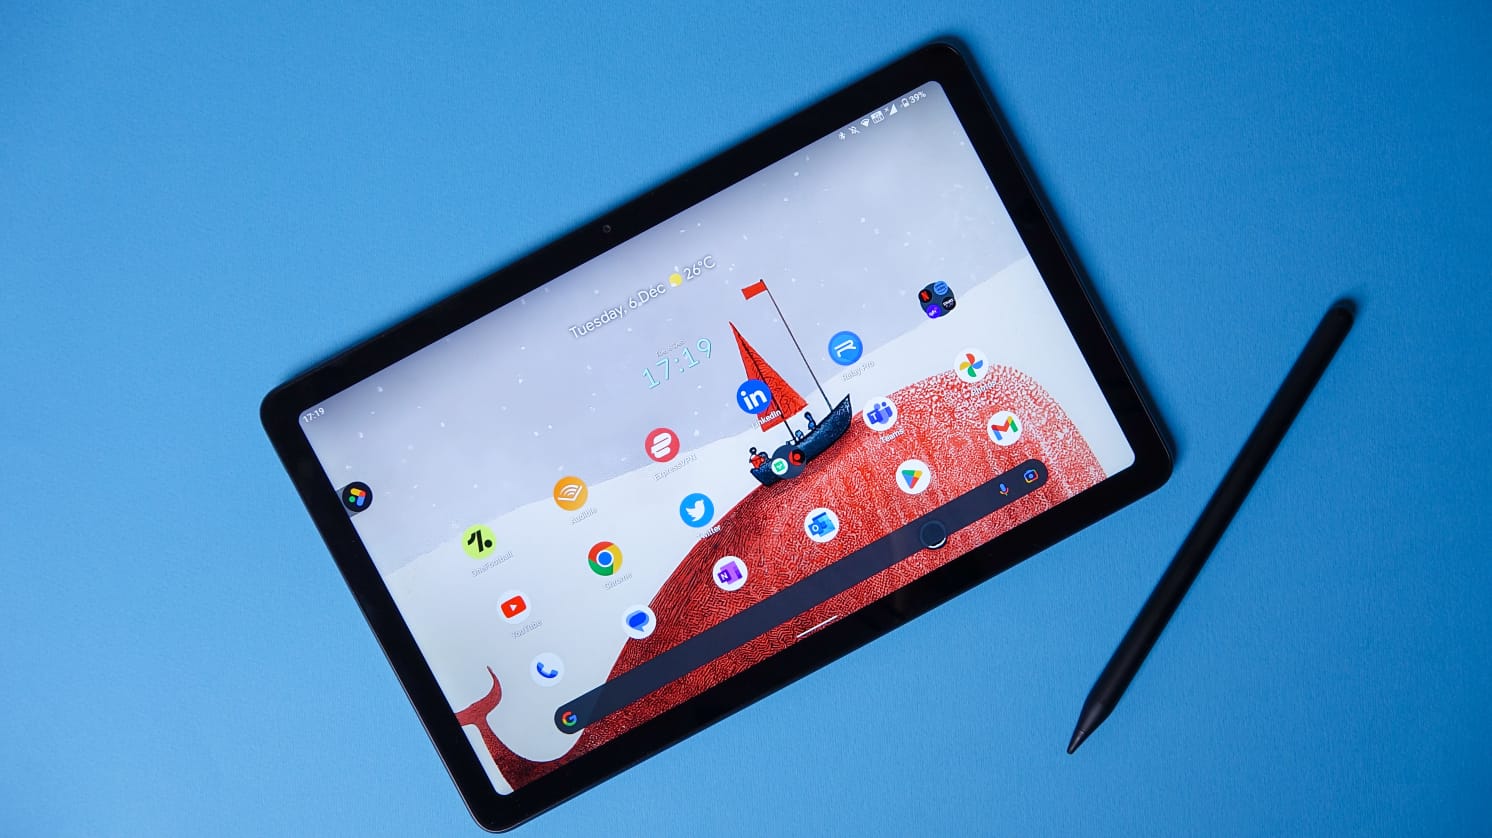 Pixel Tablet : prise en main de la nouvelle tablette Google - CNET